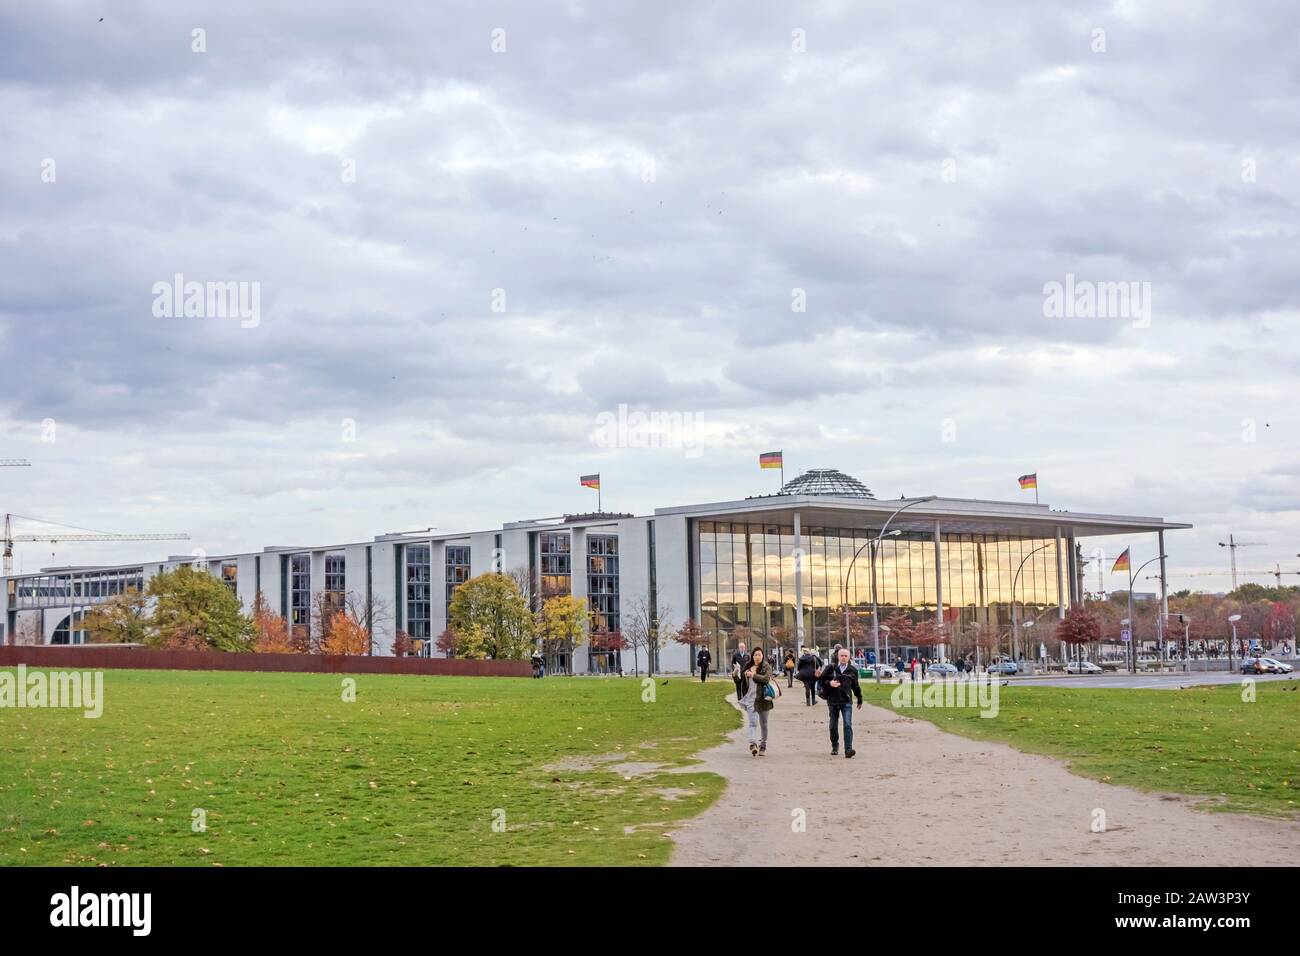 Berlin, Allemagne - 28 octobre 2013: Regierungsviertel (gouvernement distrait) - bâtiments modernes - où la politique est faite en Allemagne. Banque D'Images